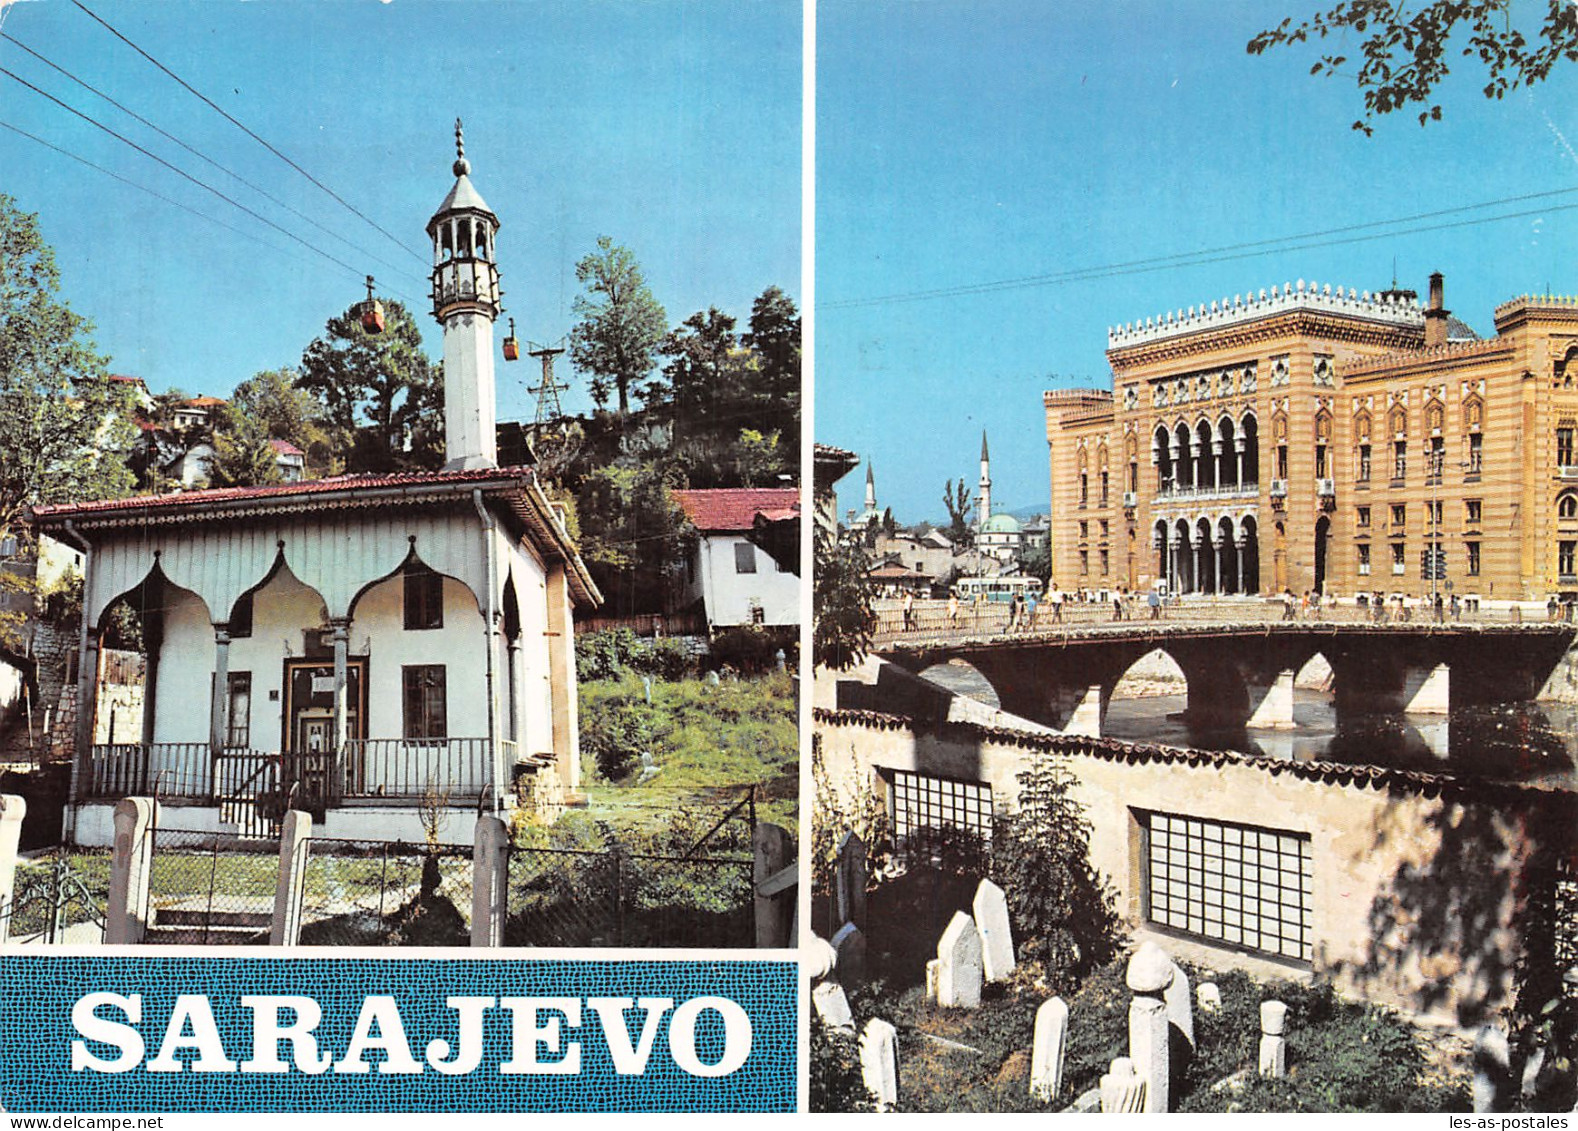 JUGOSLAVIJA SARAJEVO - Yugoslavia